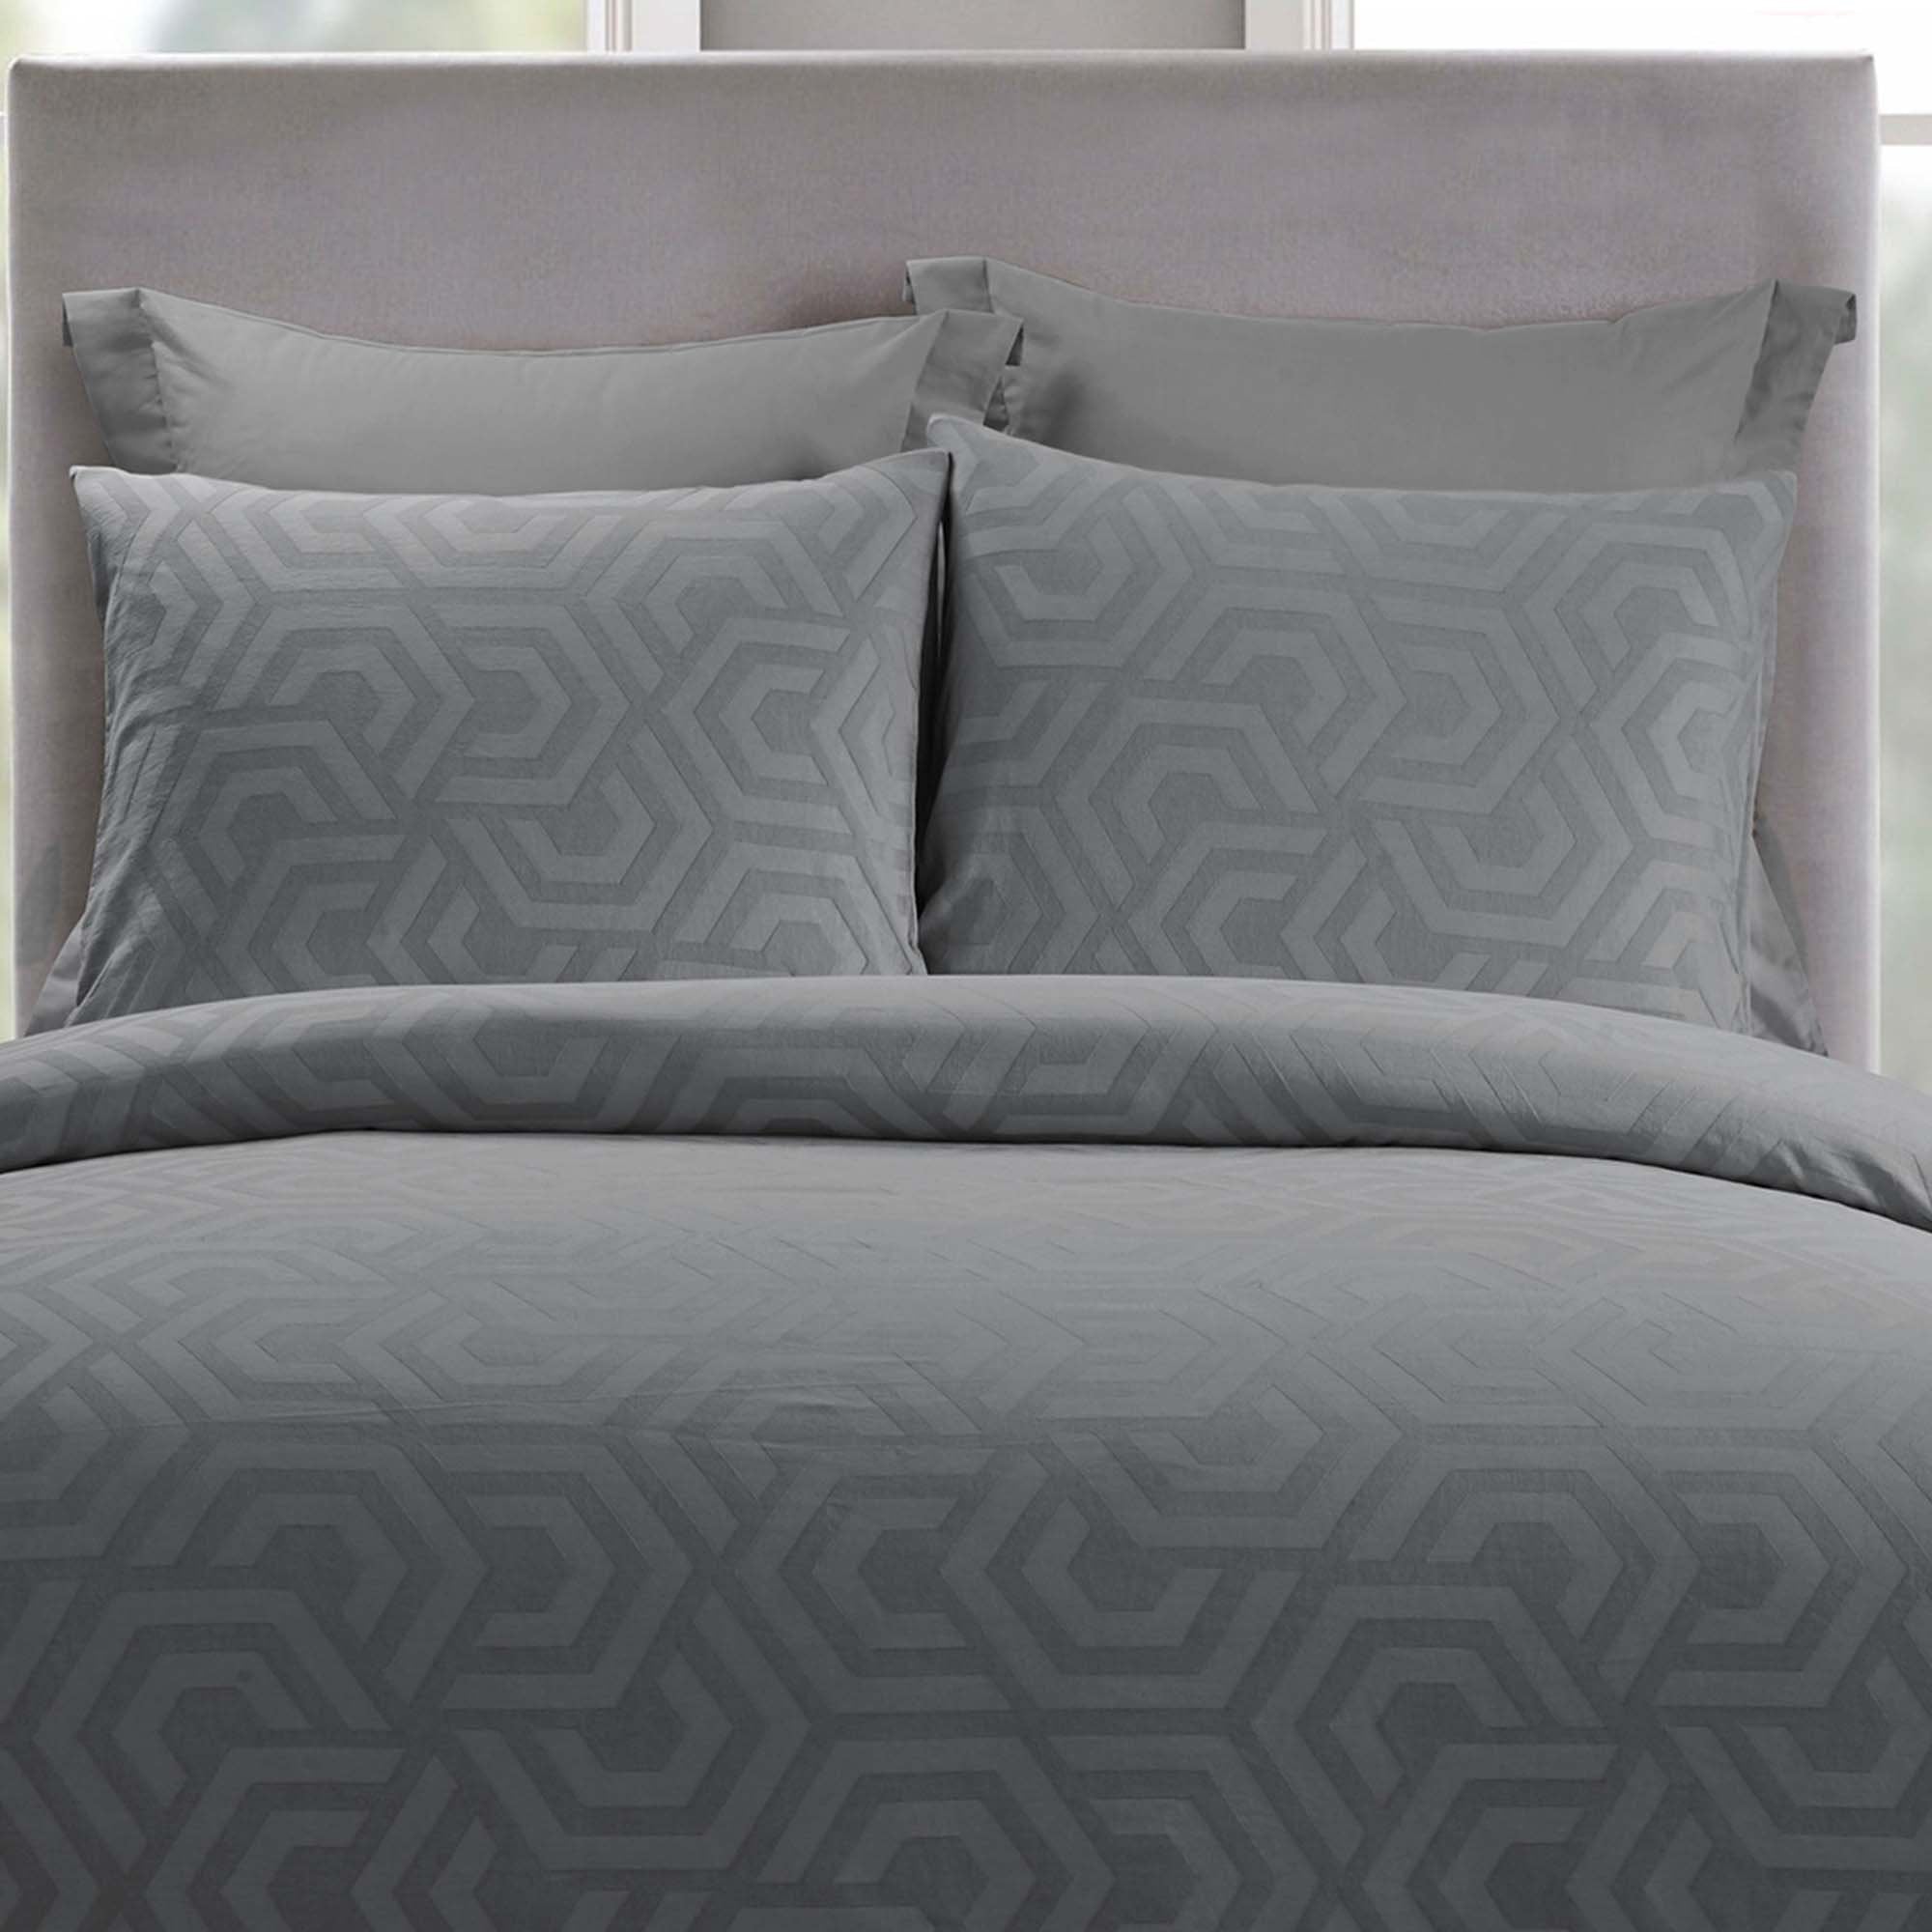 Seville Grey 3-Piece Comforter Set Comforter Sets By Donna Sharp